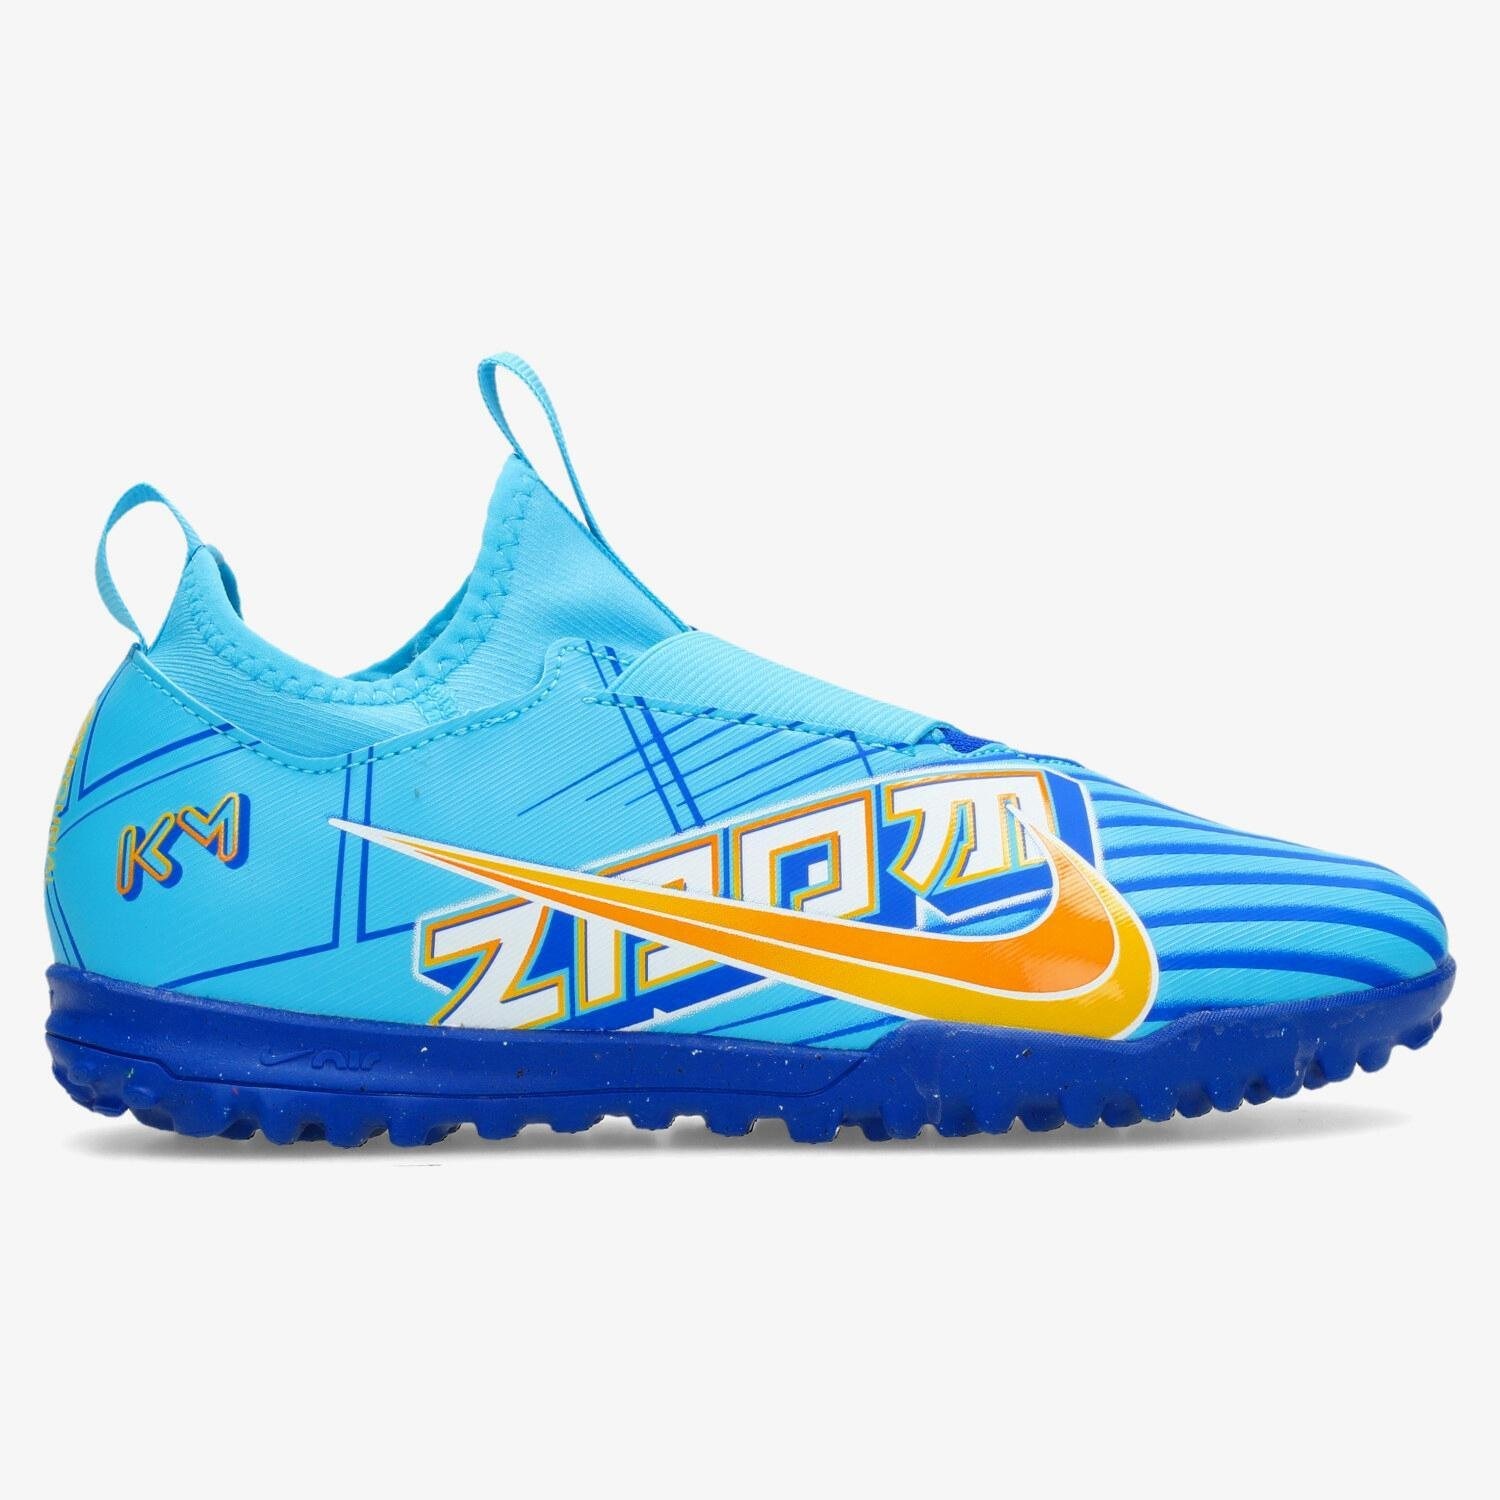 Nike Nike mercurial vapor club indoor voetbalschoenen blauw/wit kinderen kinderen